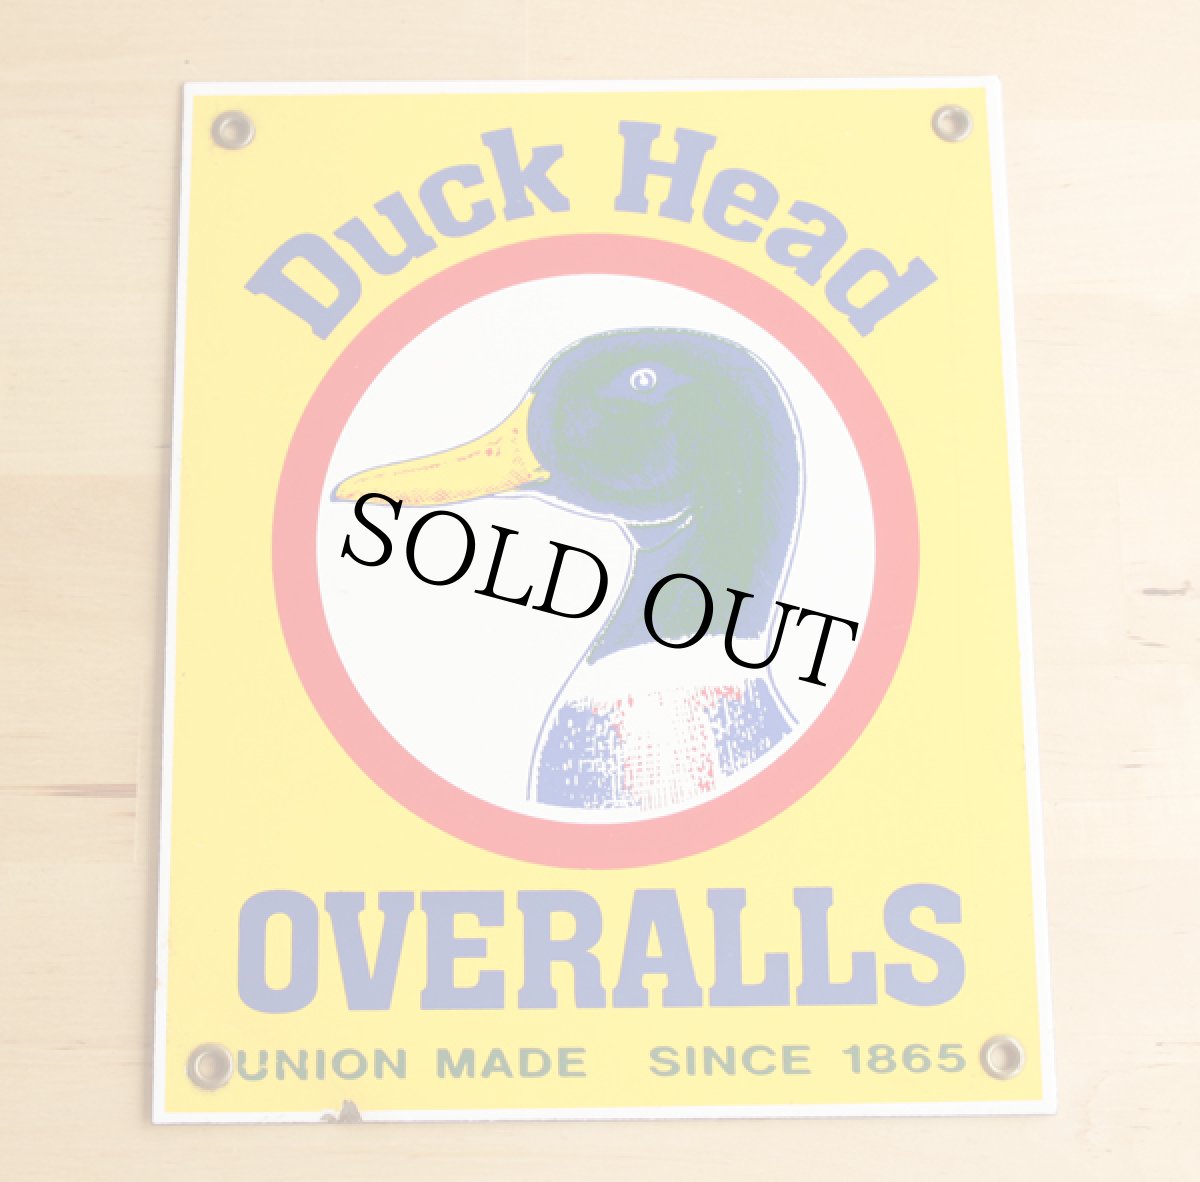 画像1: Duck Head OVERALLS サイン★看板 アンティーク (1)